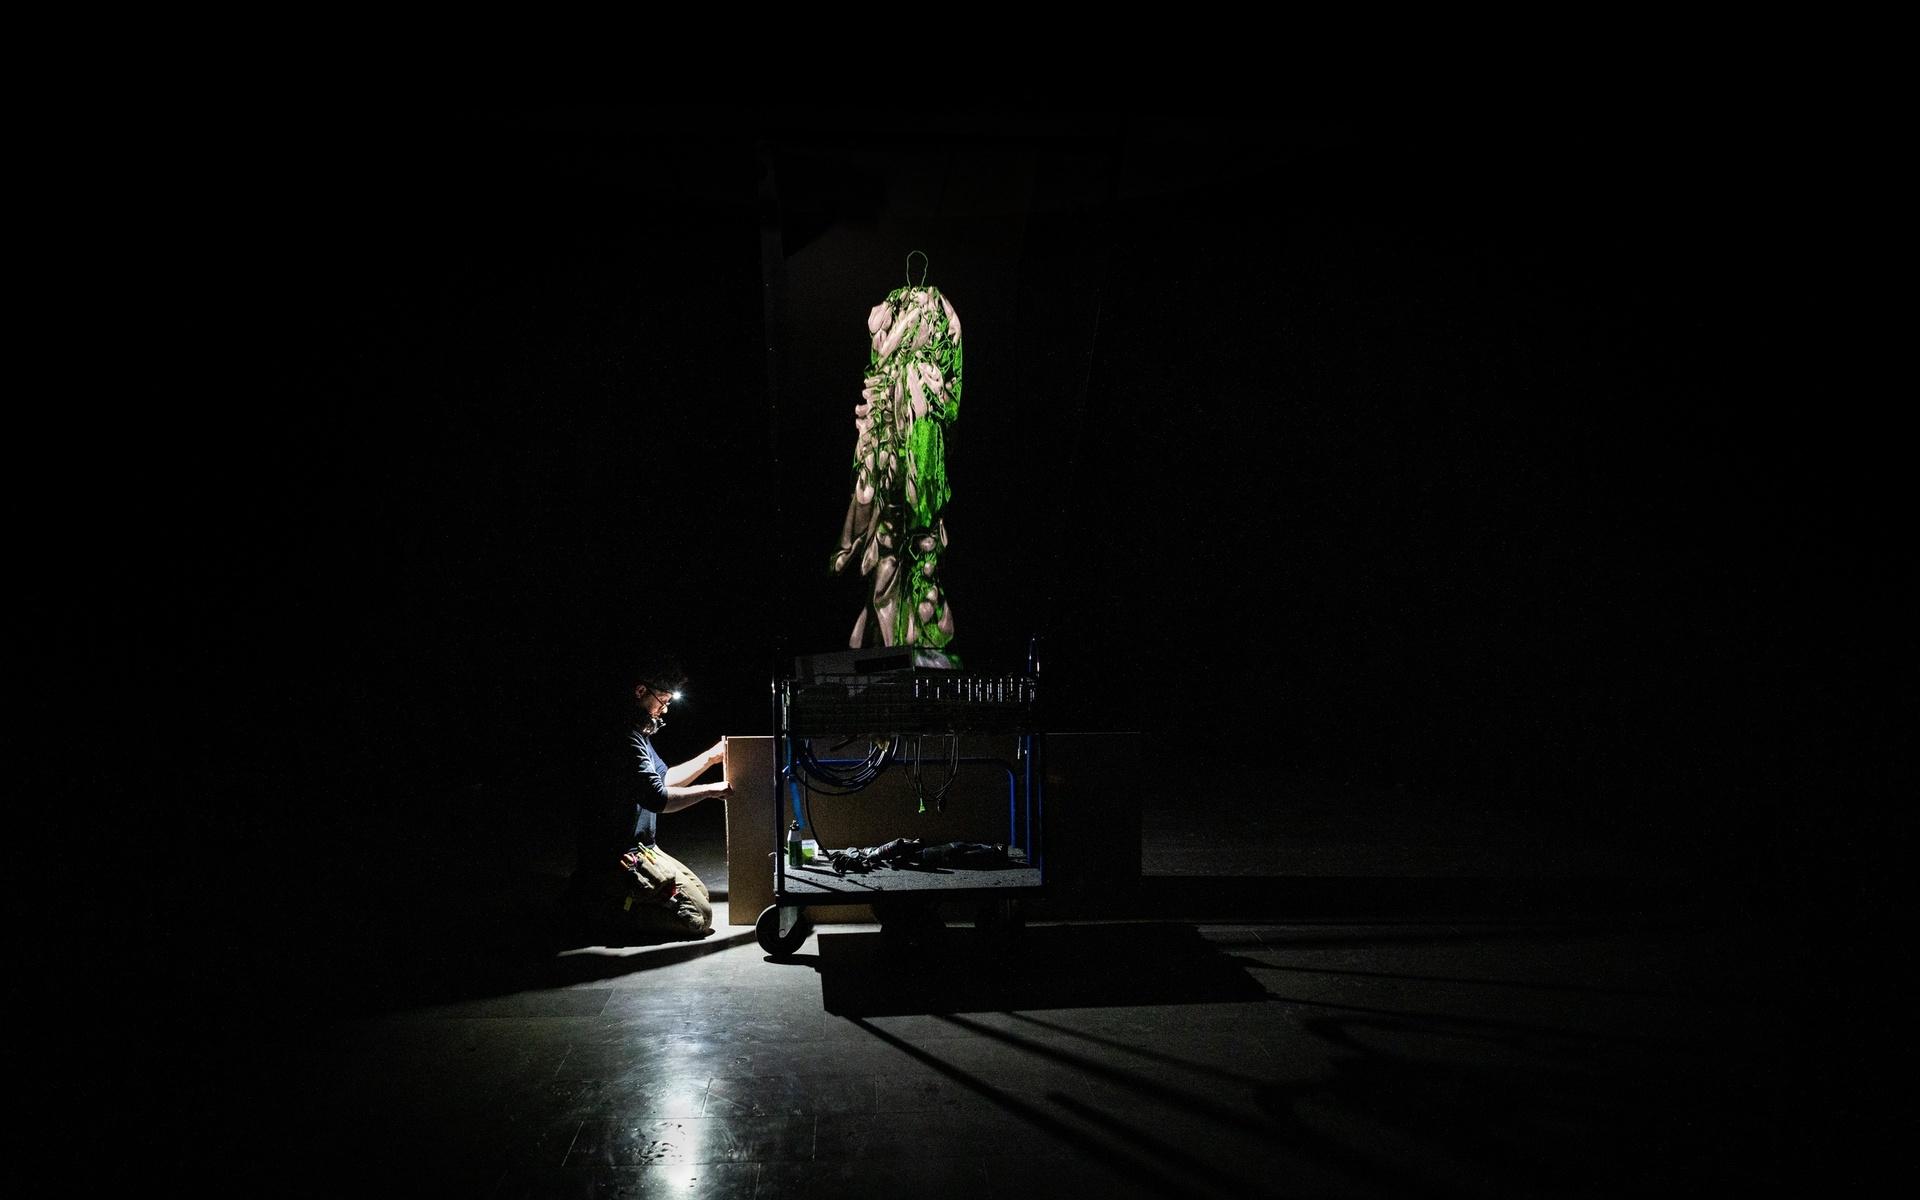 Ett av verken som visas i utställningen är ”Flo”, ett hologram som döpts efter konstnärens mor som gick bort när Mujinga var tonåring. Till verket spelas en eterisk ljudbild av elektronisk musik som Sandra Mujinga skapat under artistnamnet 9Djinn.